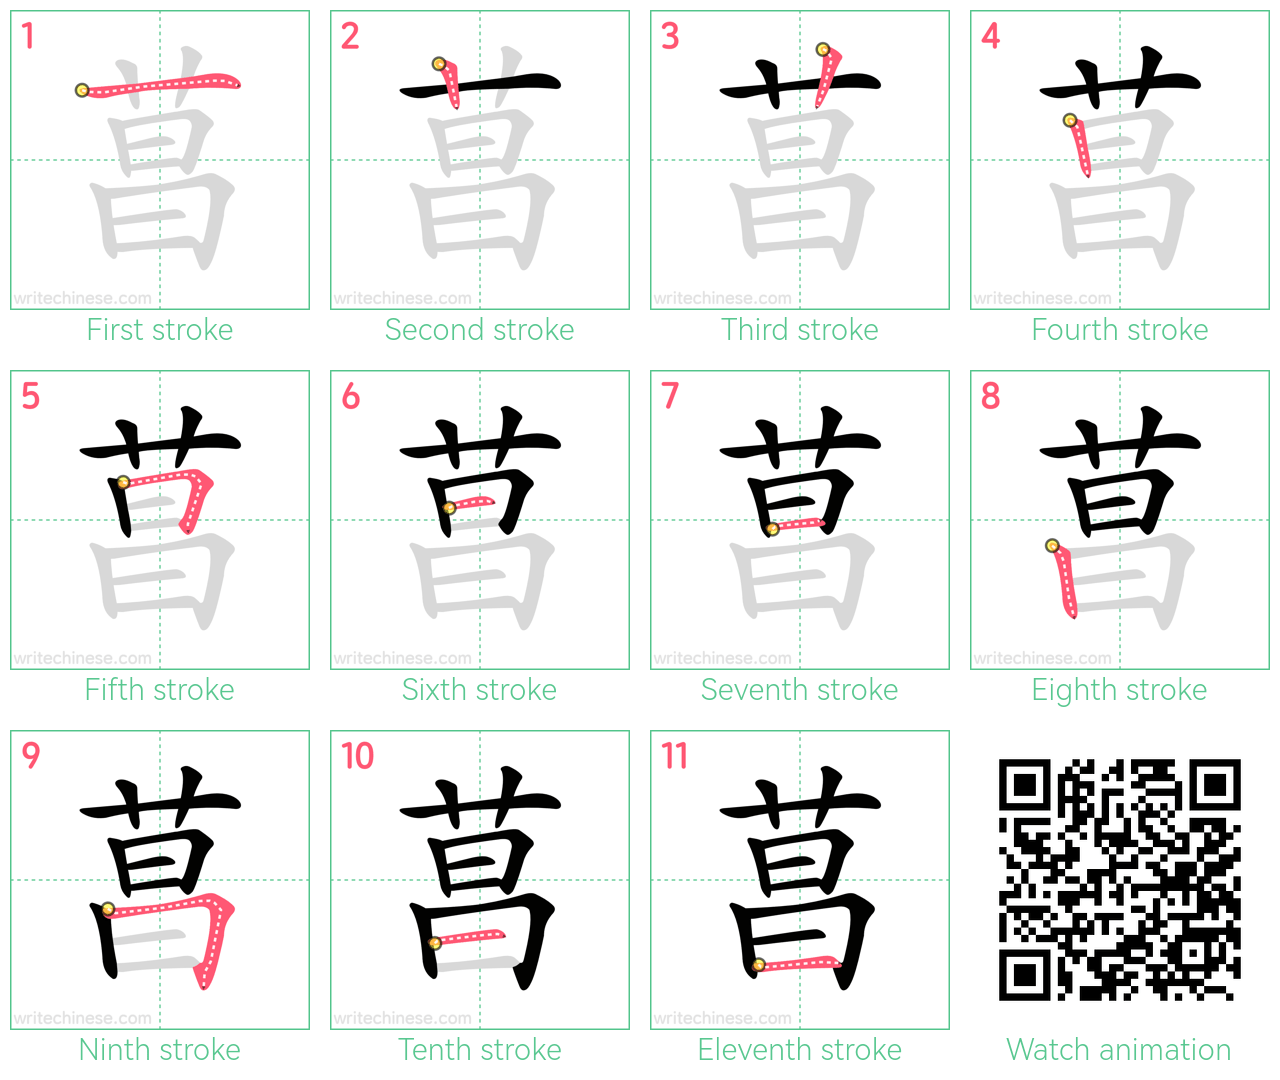 菖 step-by-step stroke order diagrams